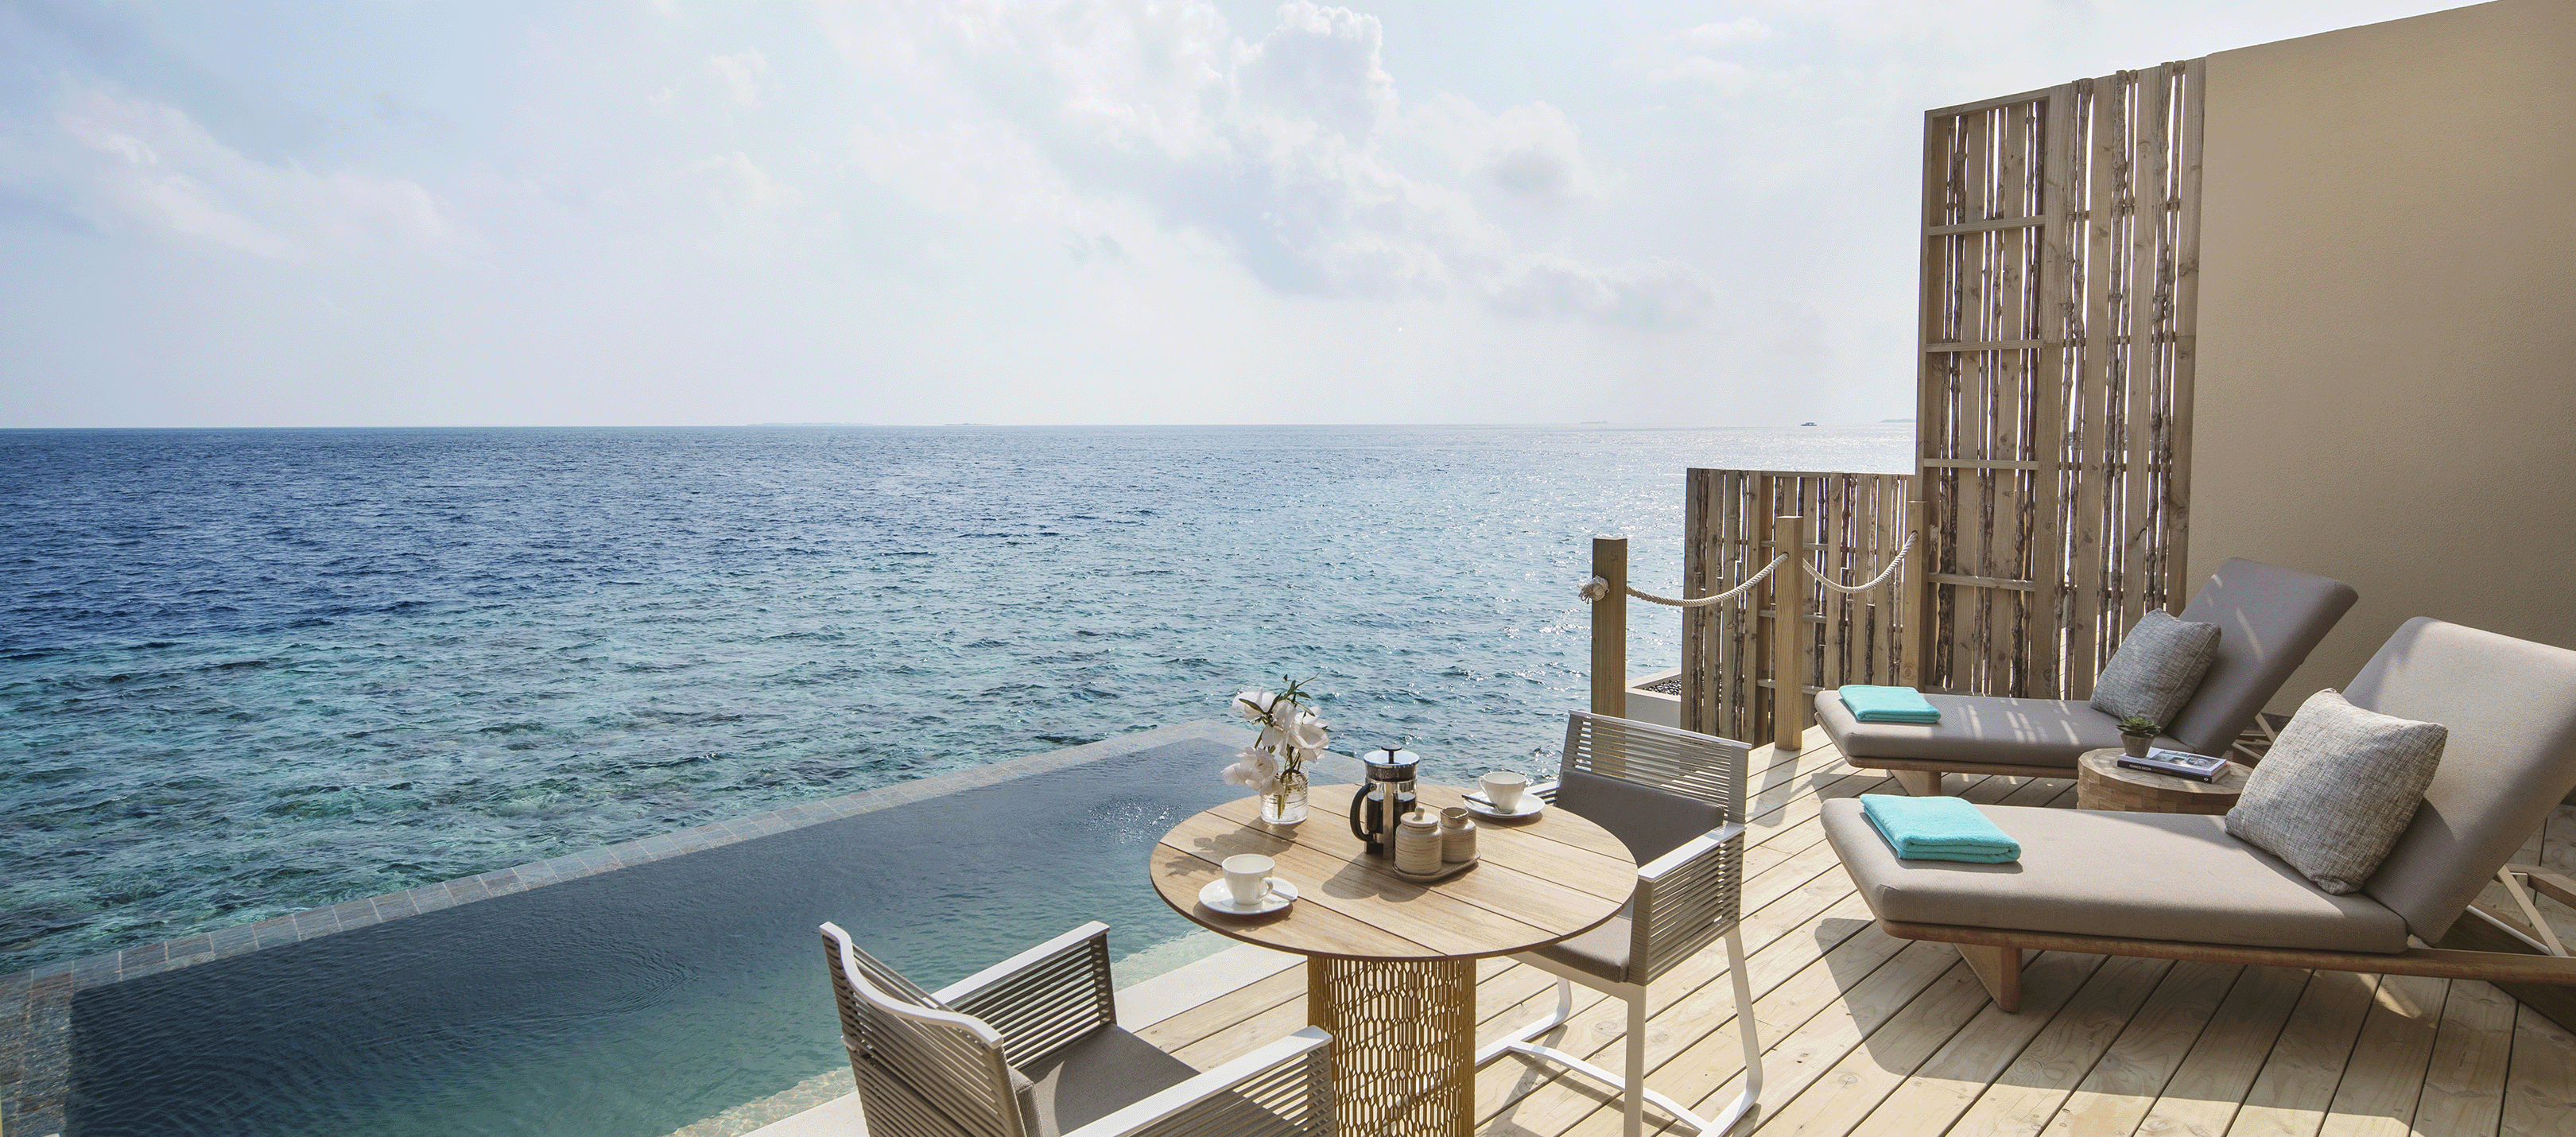 Столик и стулья на террасе рядом с океаном 